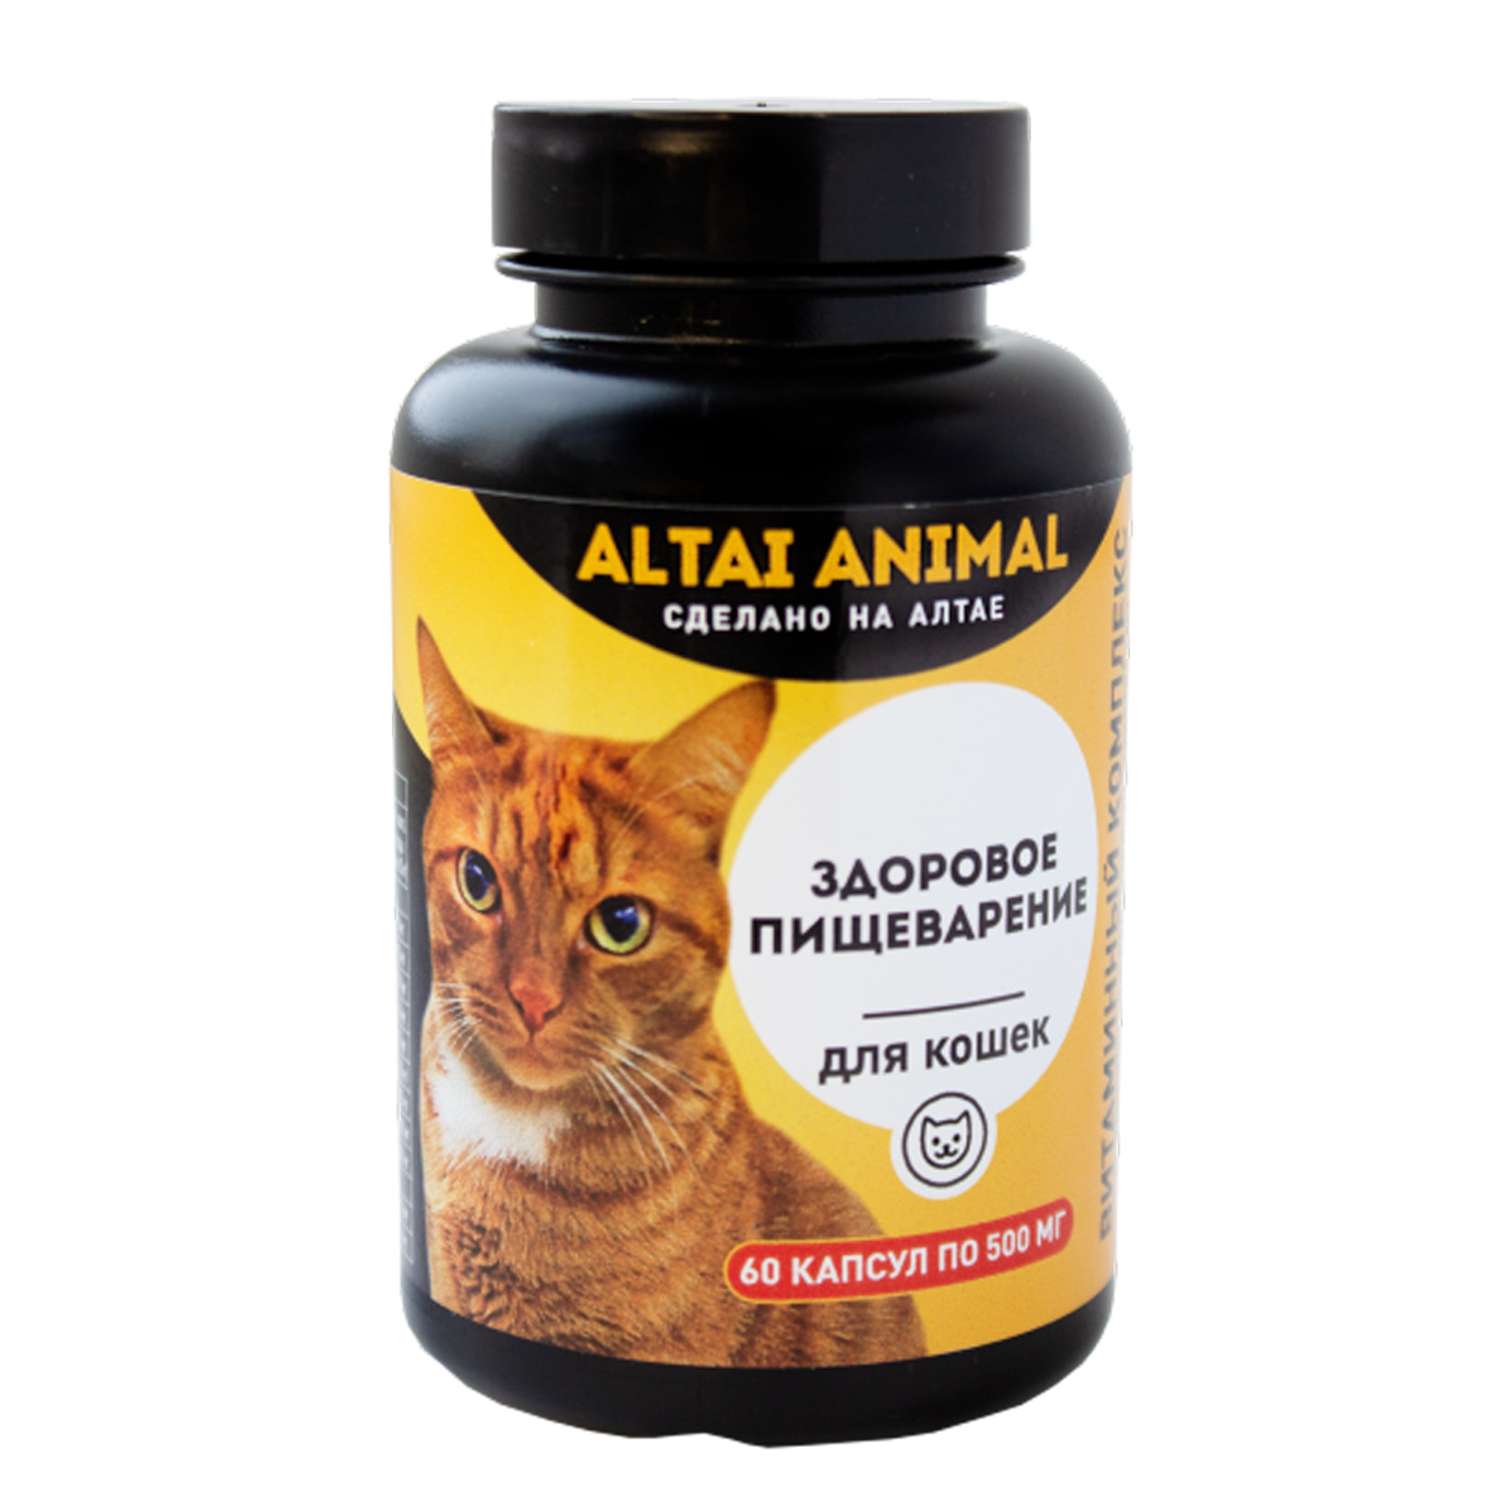 Витаминный комплекс ALTAI ANIMAL для кошек Здоровое пищеварение - фото 1